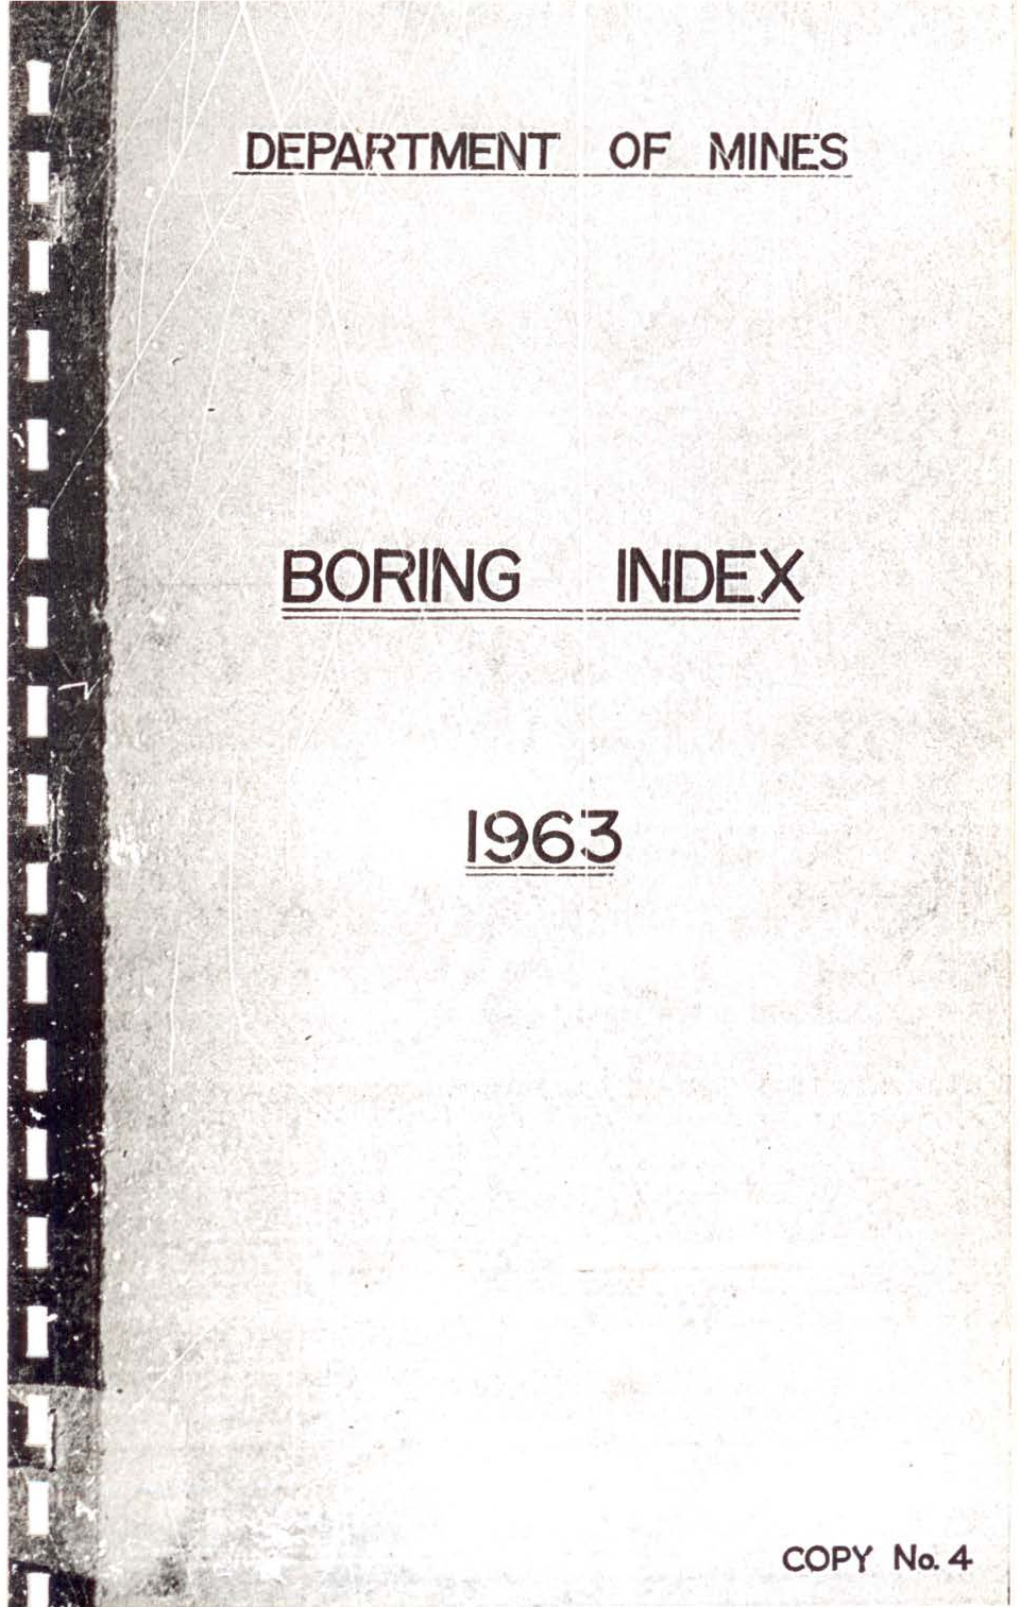 Boring Index